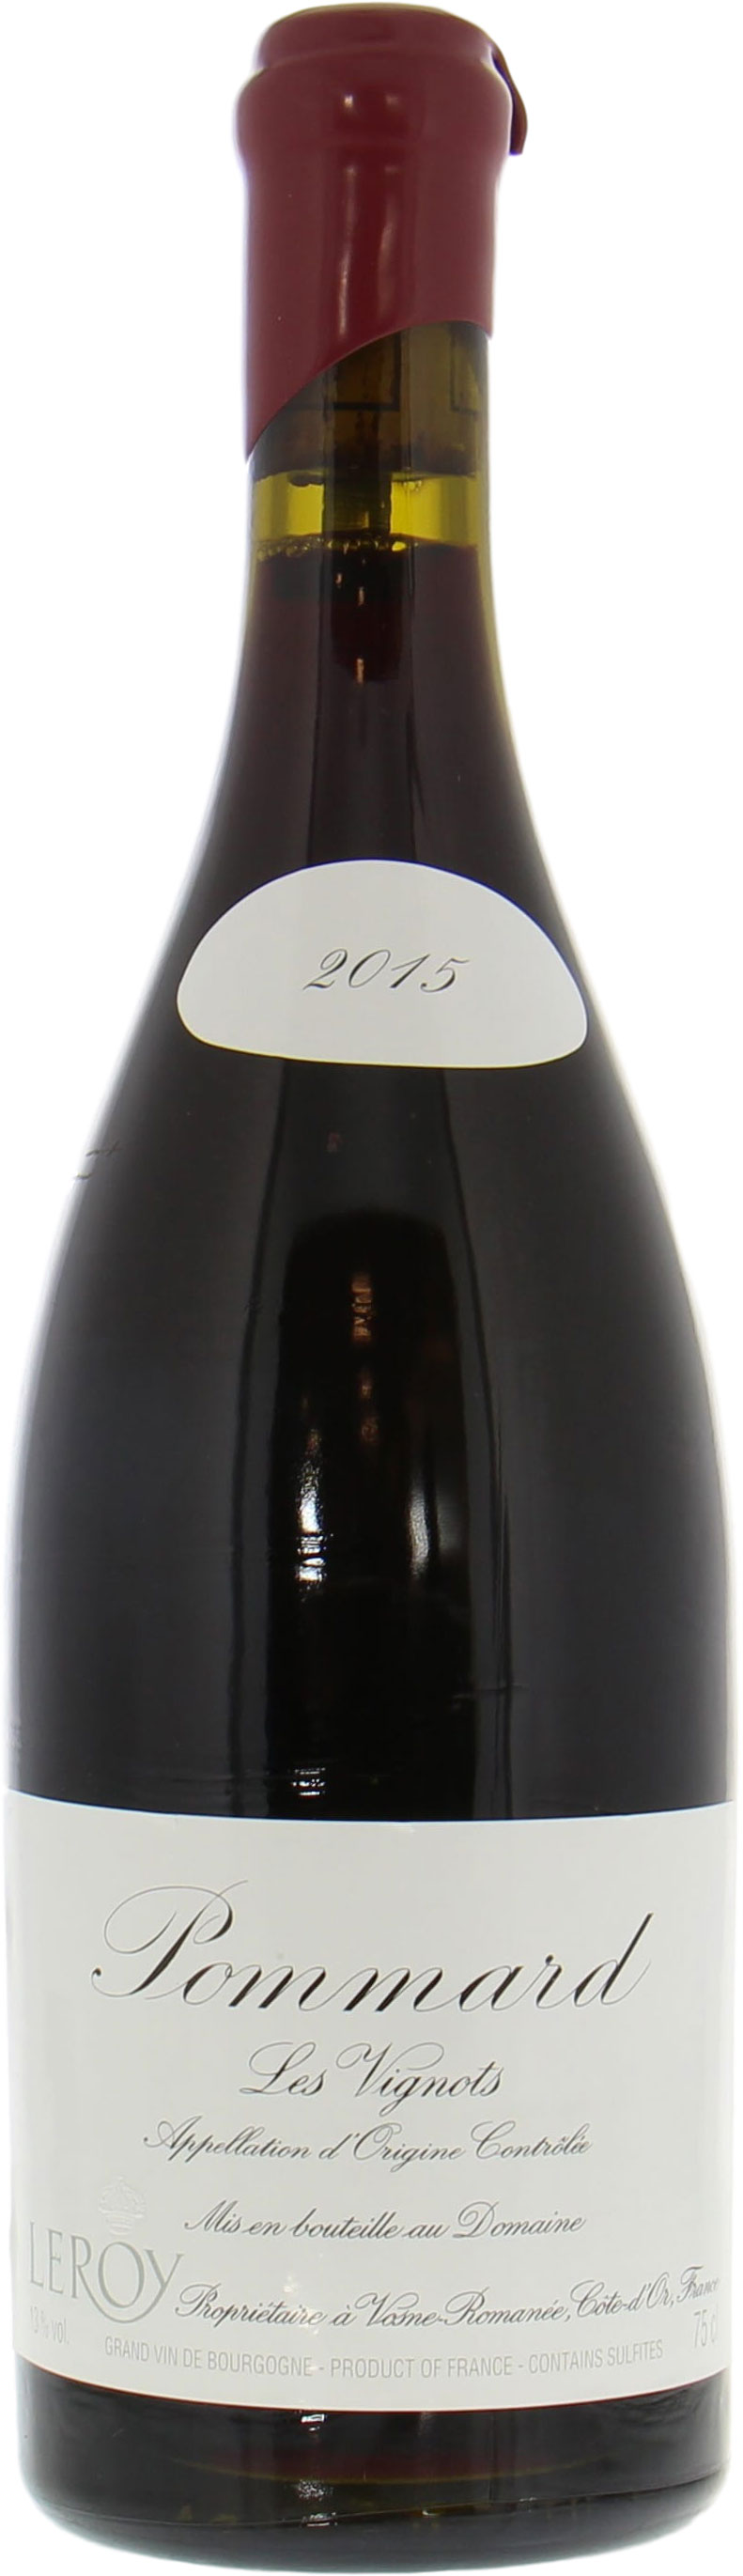 Domaine Leroy - Pommard les Vignots 2015 Perfect